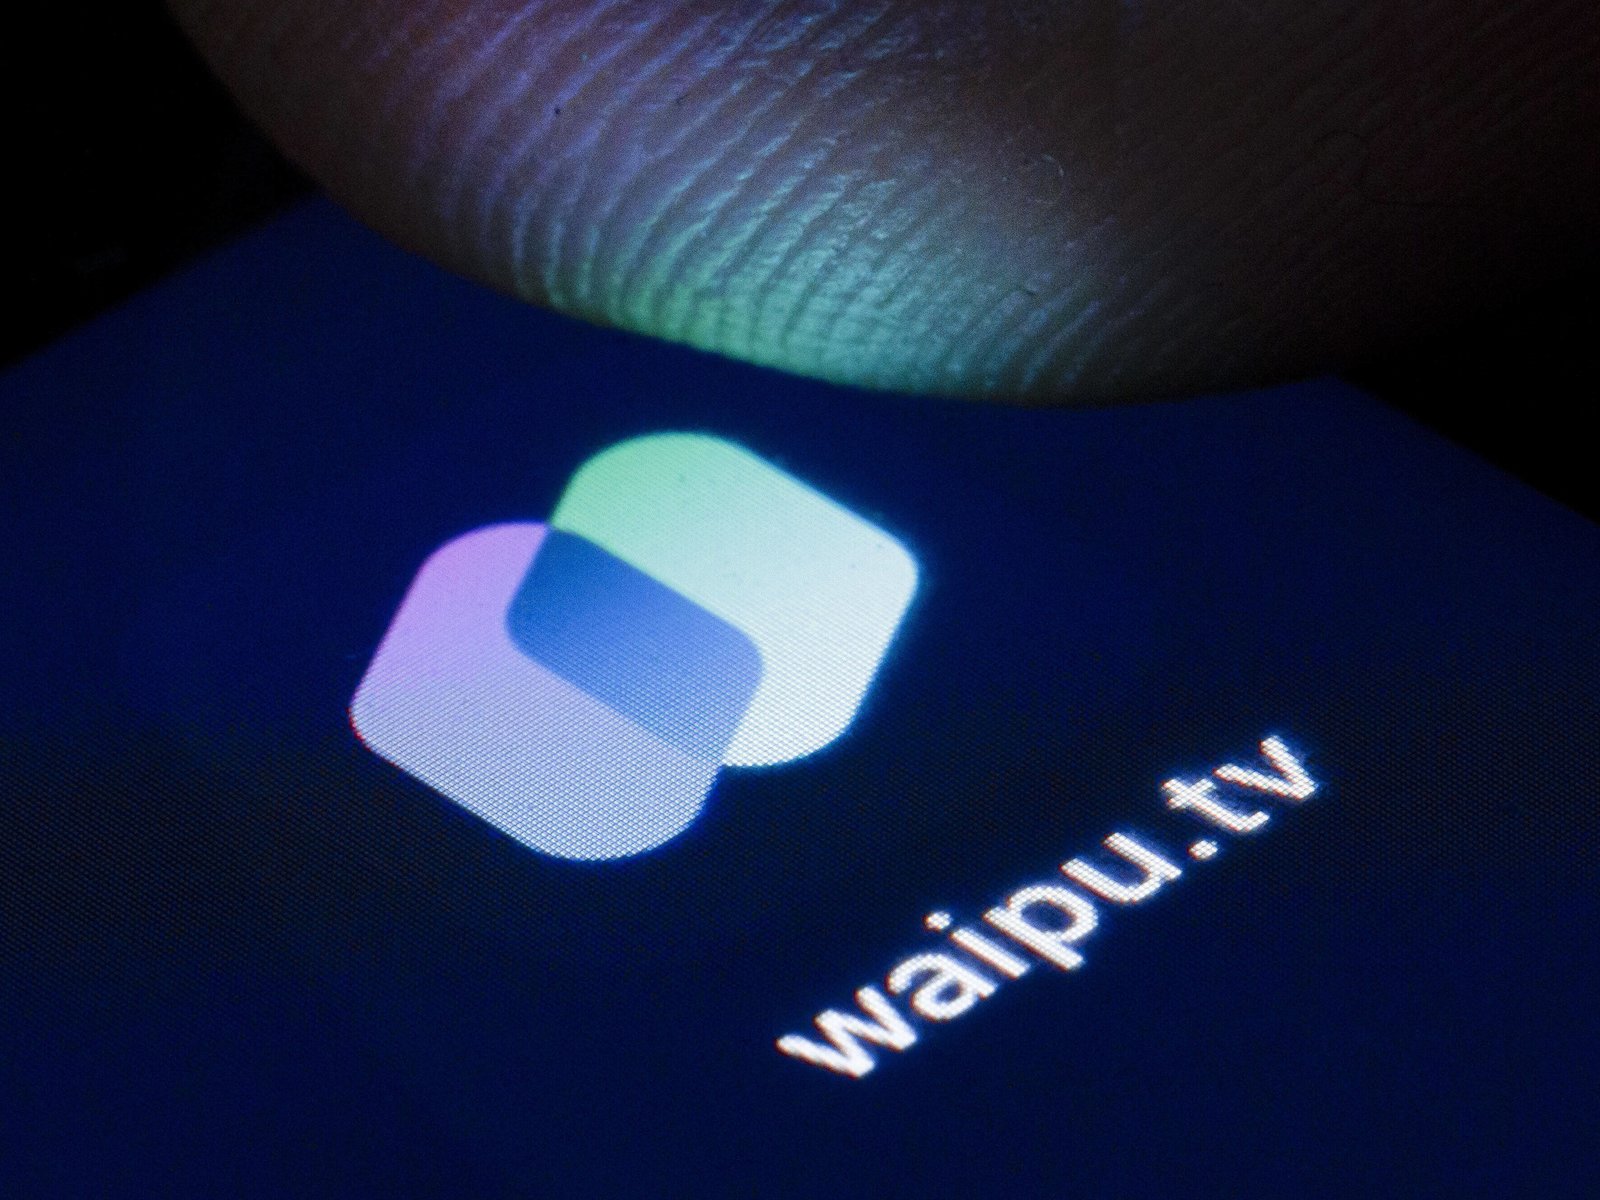 aktuelle – Sender in Übersicht und waipu.tv der Kosten, Angebote